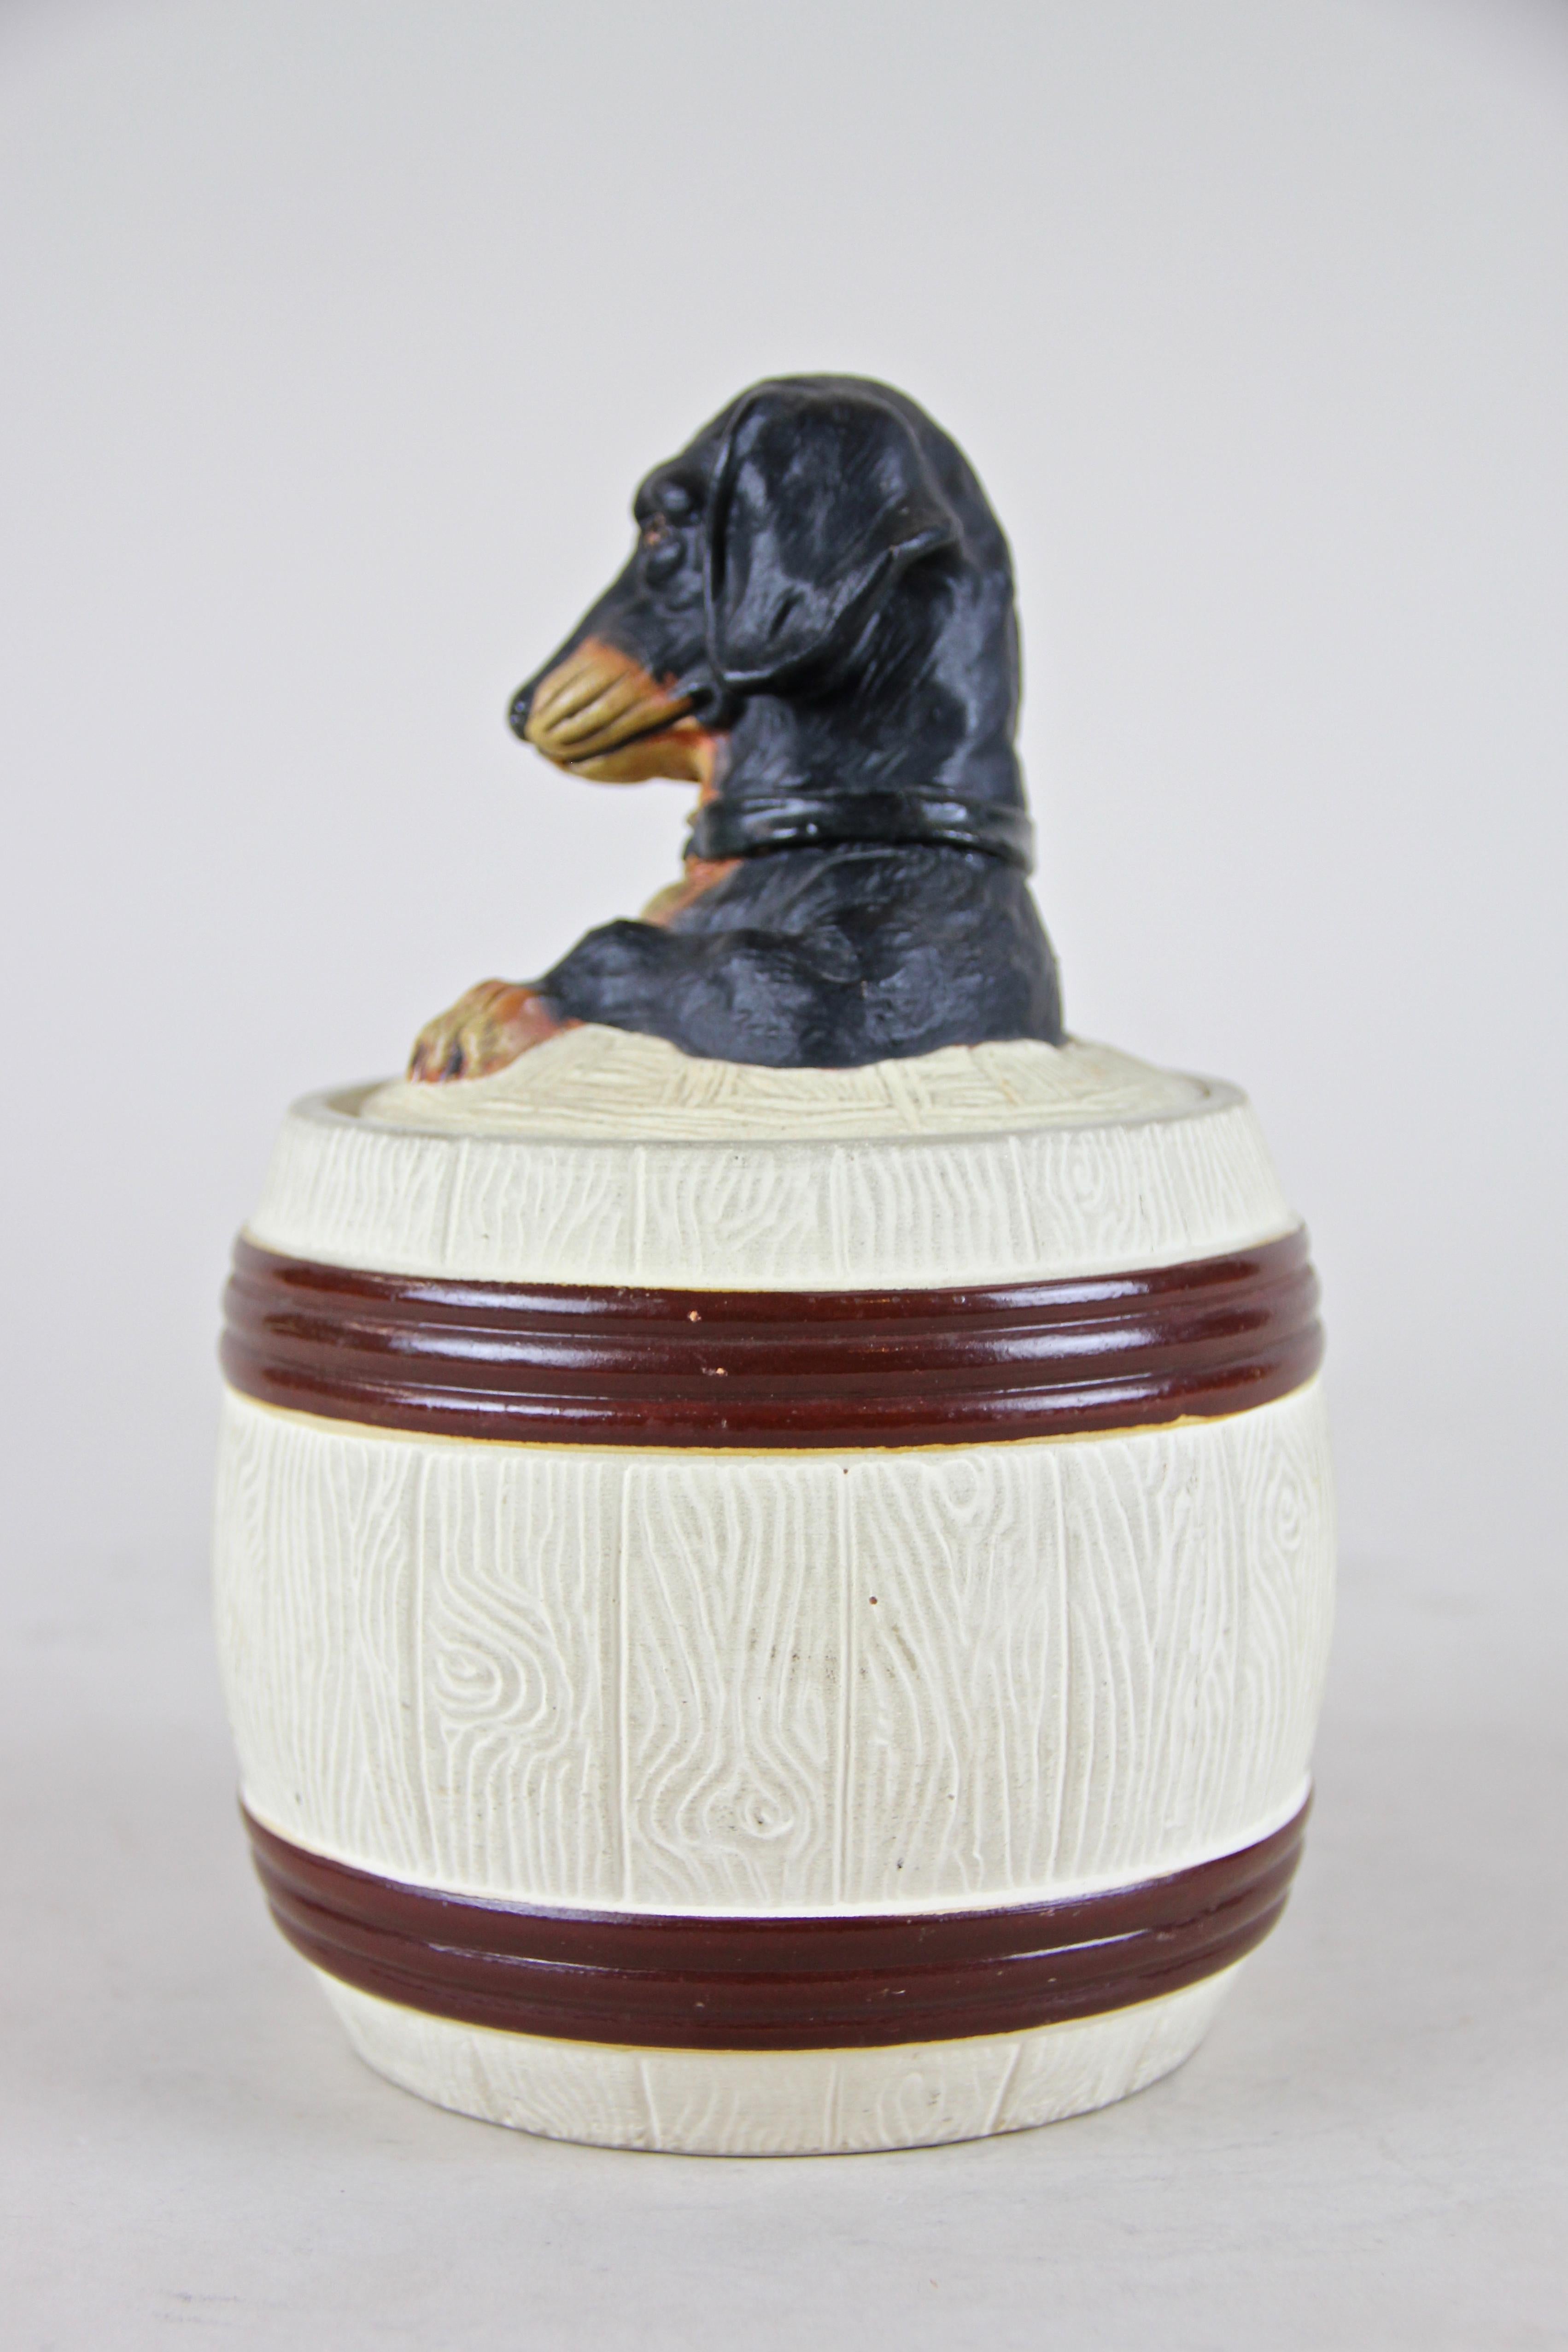 dachshund cookie jar